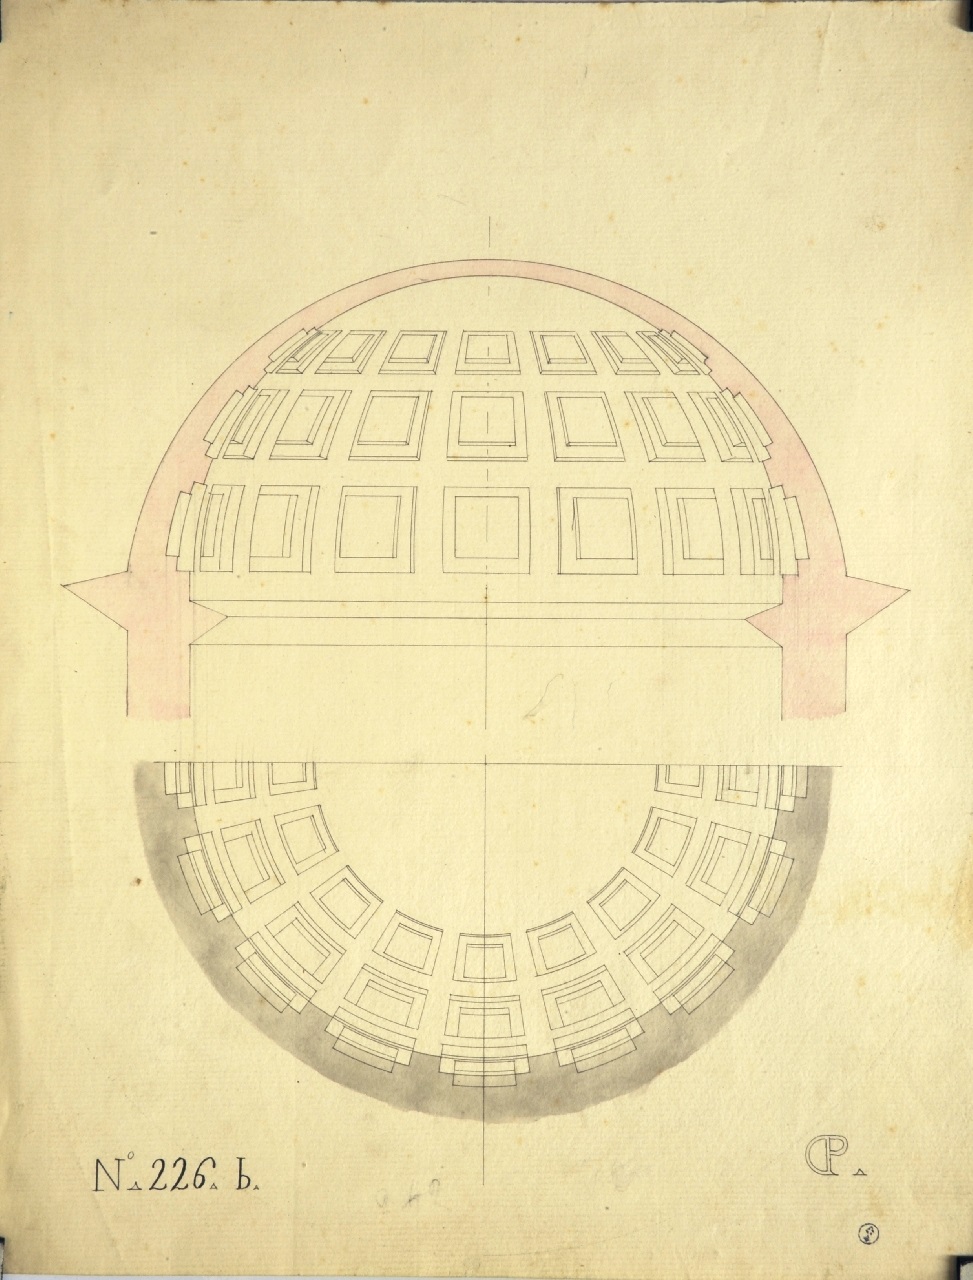 Studio di geometria: pianta e sezione di volta emisferica con cassettoni quadrati (disegno architettonico) di Promis Carlo (secondo quarto sec. XIX)